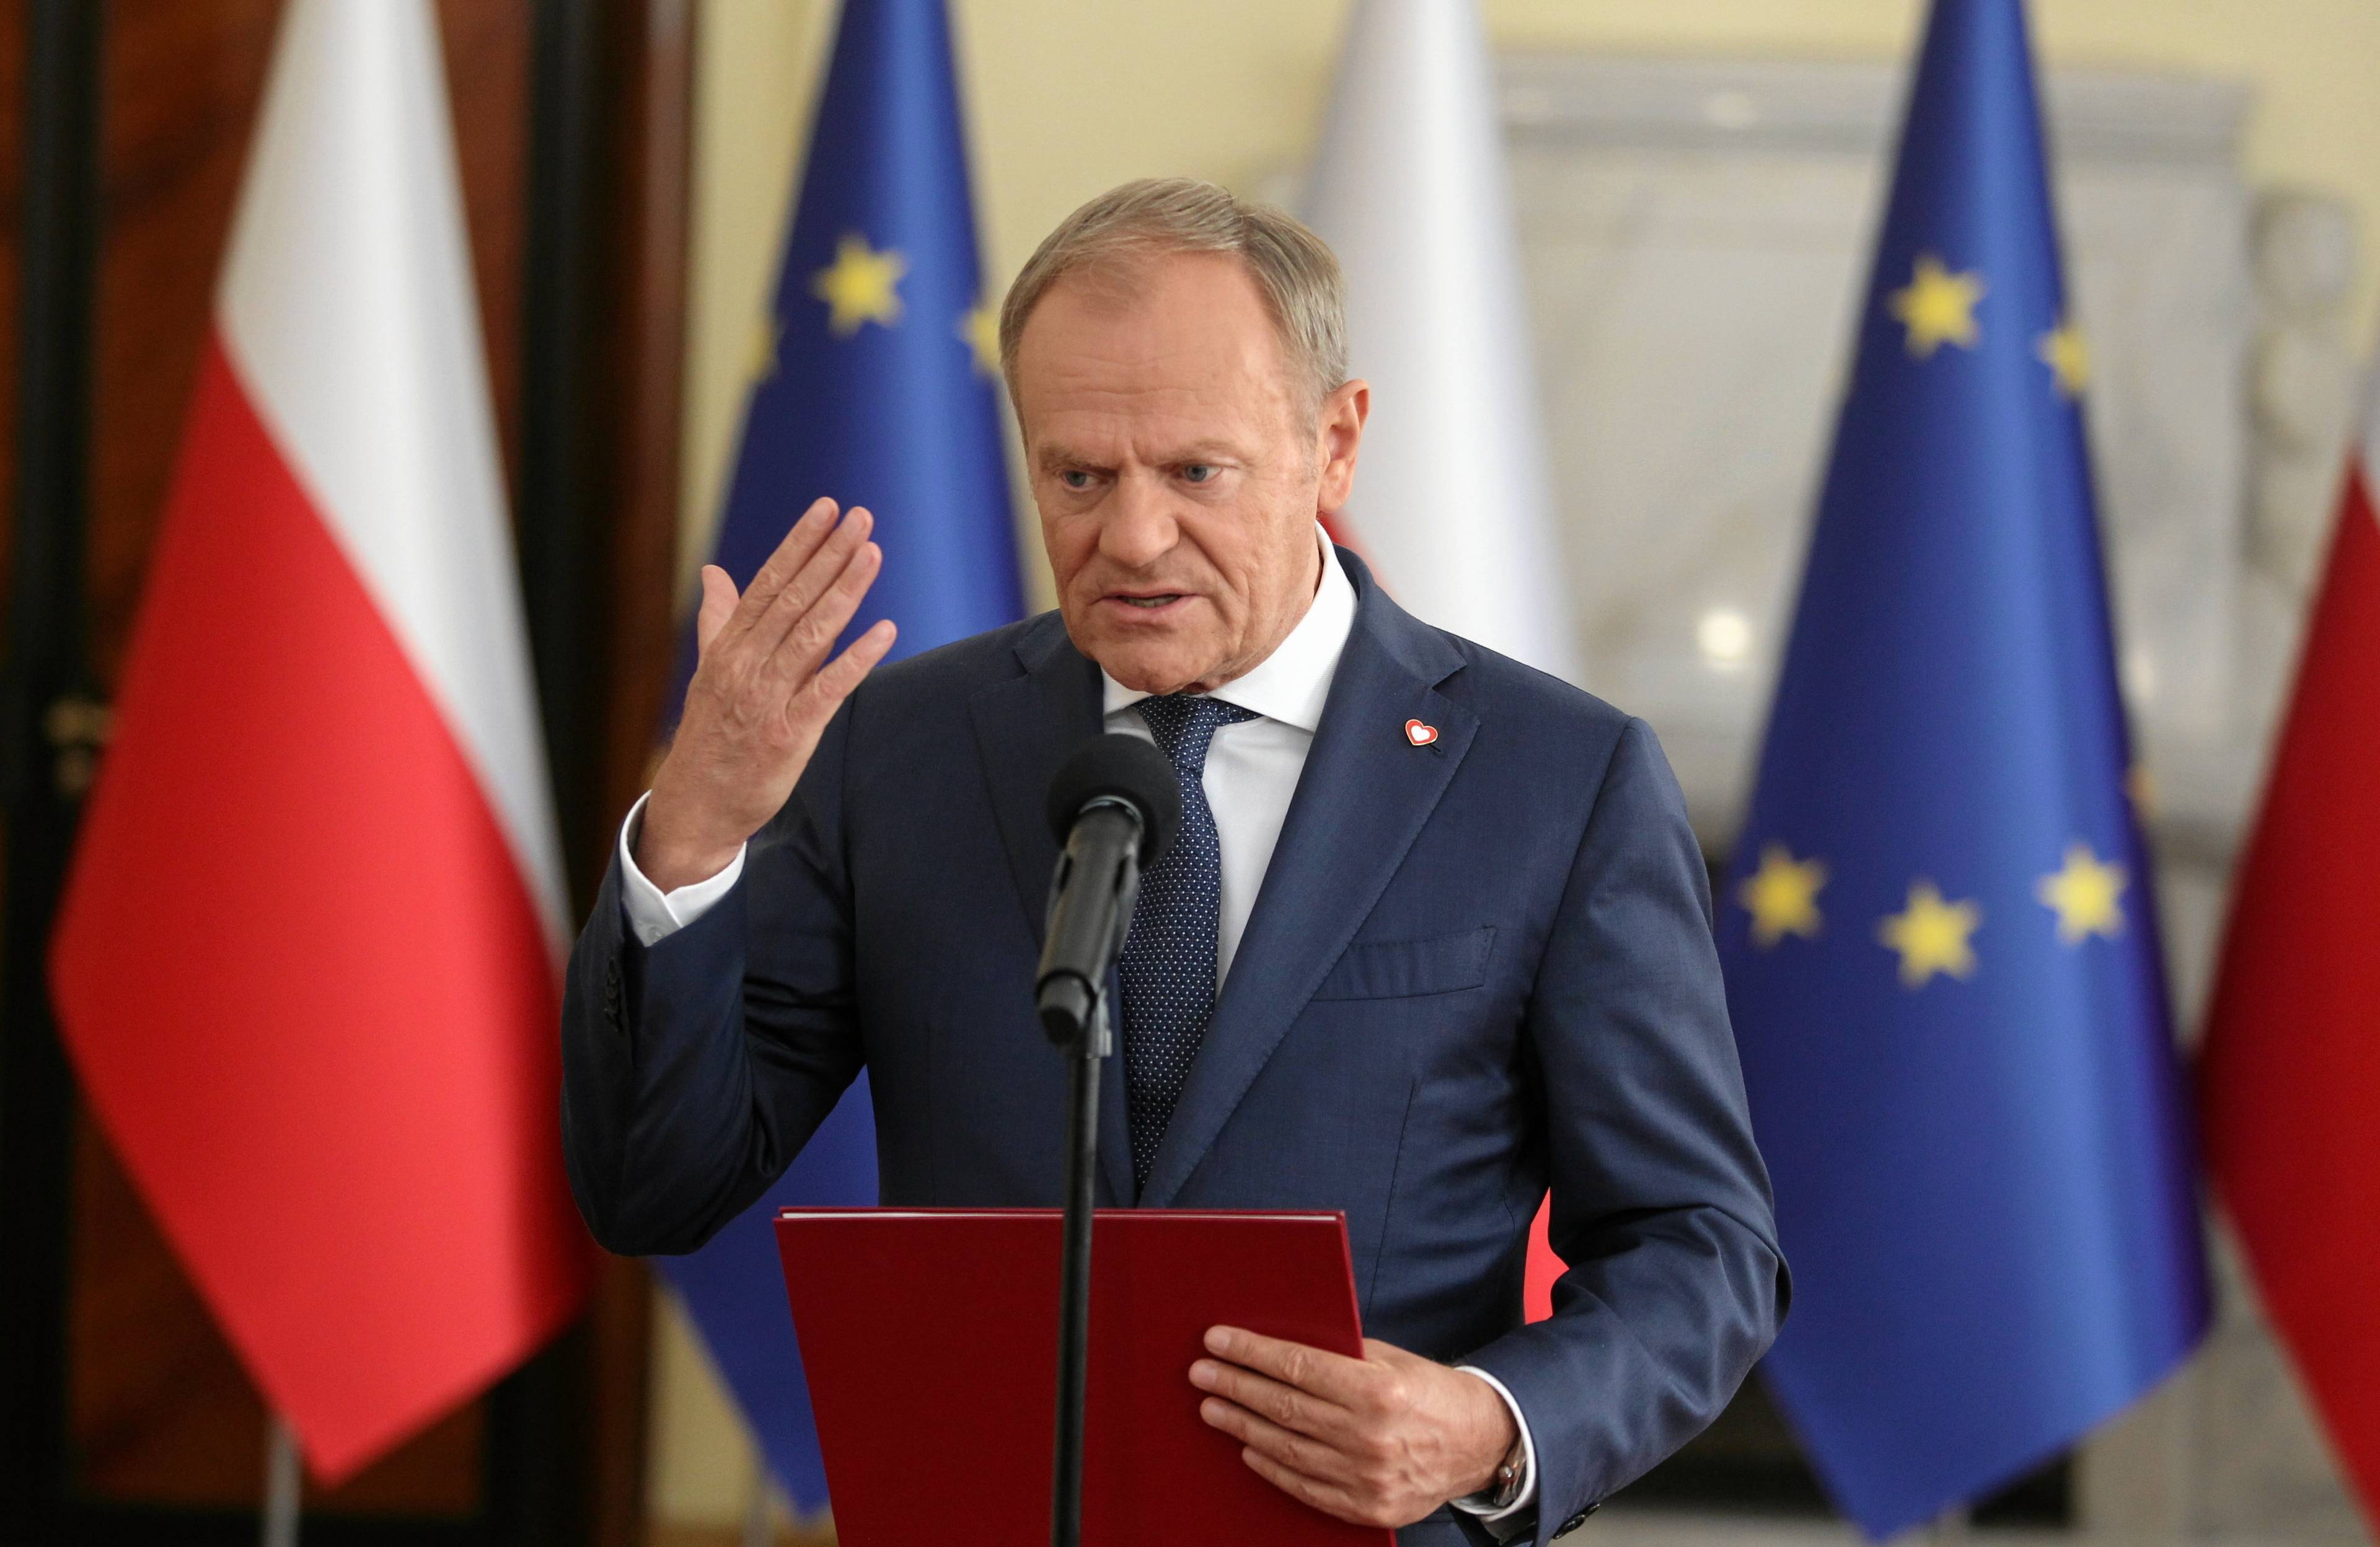 Donald Tusk macha ręką na tle flag Polski i UE stojąc przy mikrofonie